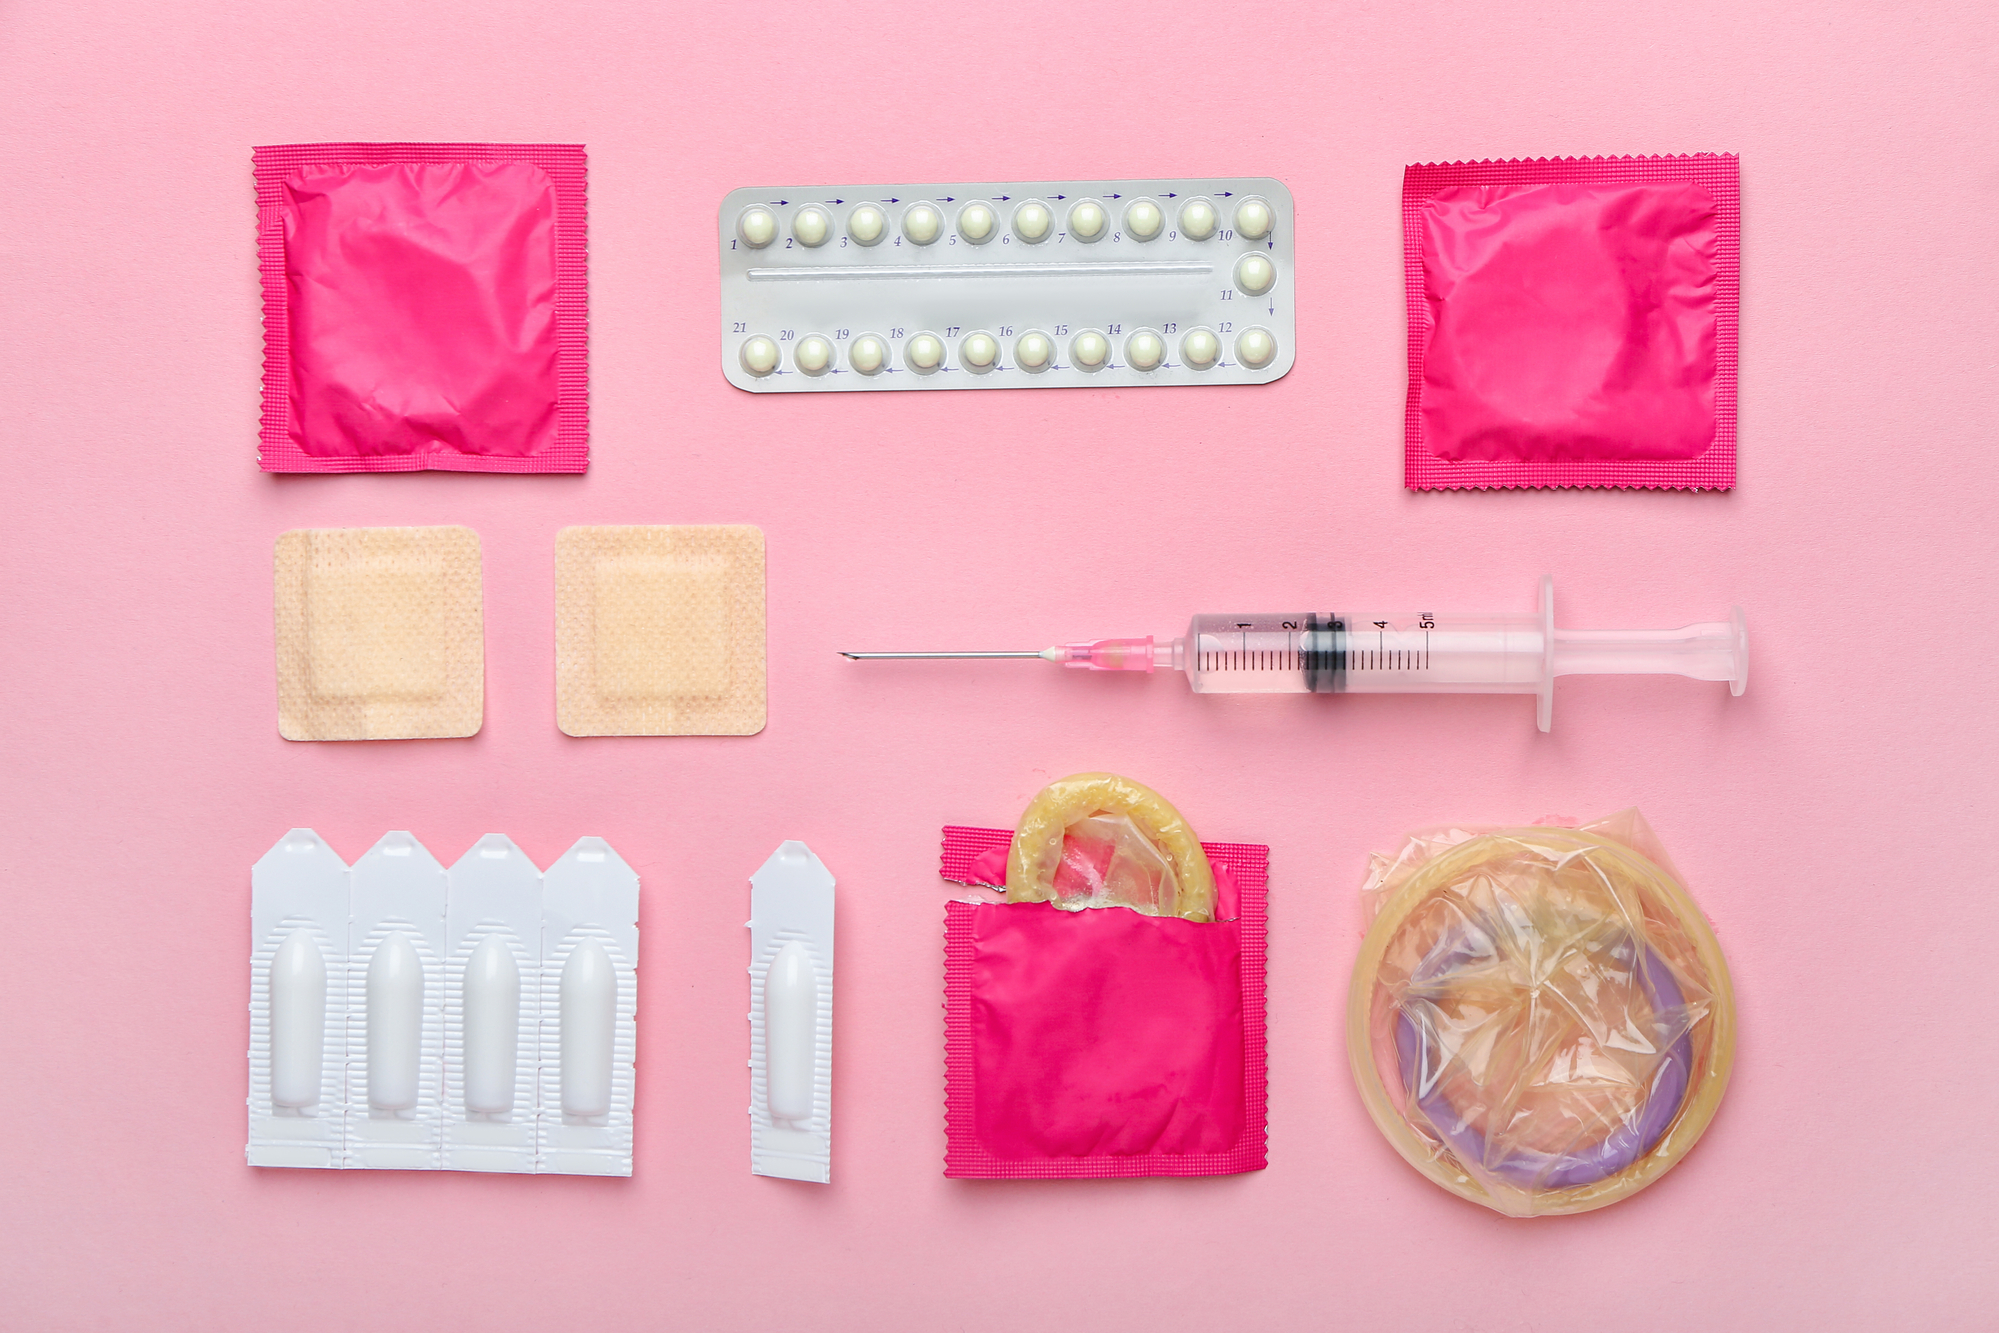 Прерванный секс – не контрацепция. Как защититься от нежелательной беременности и инфекций